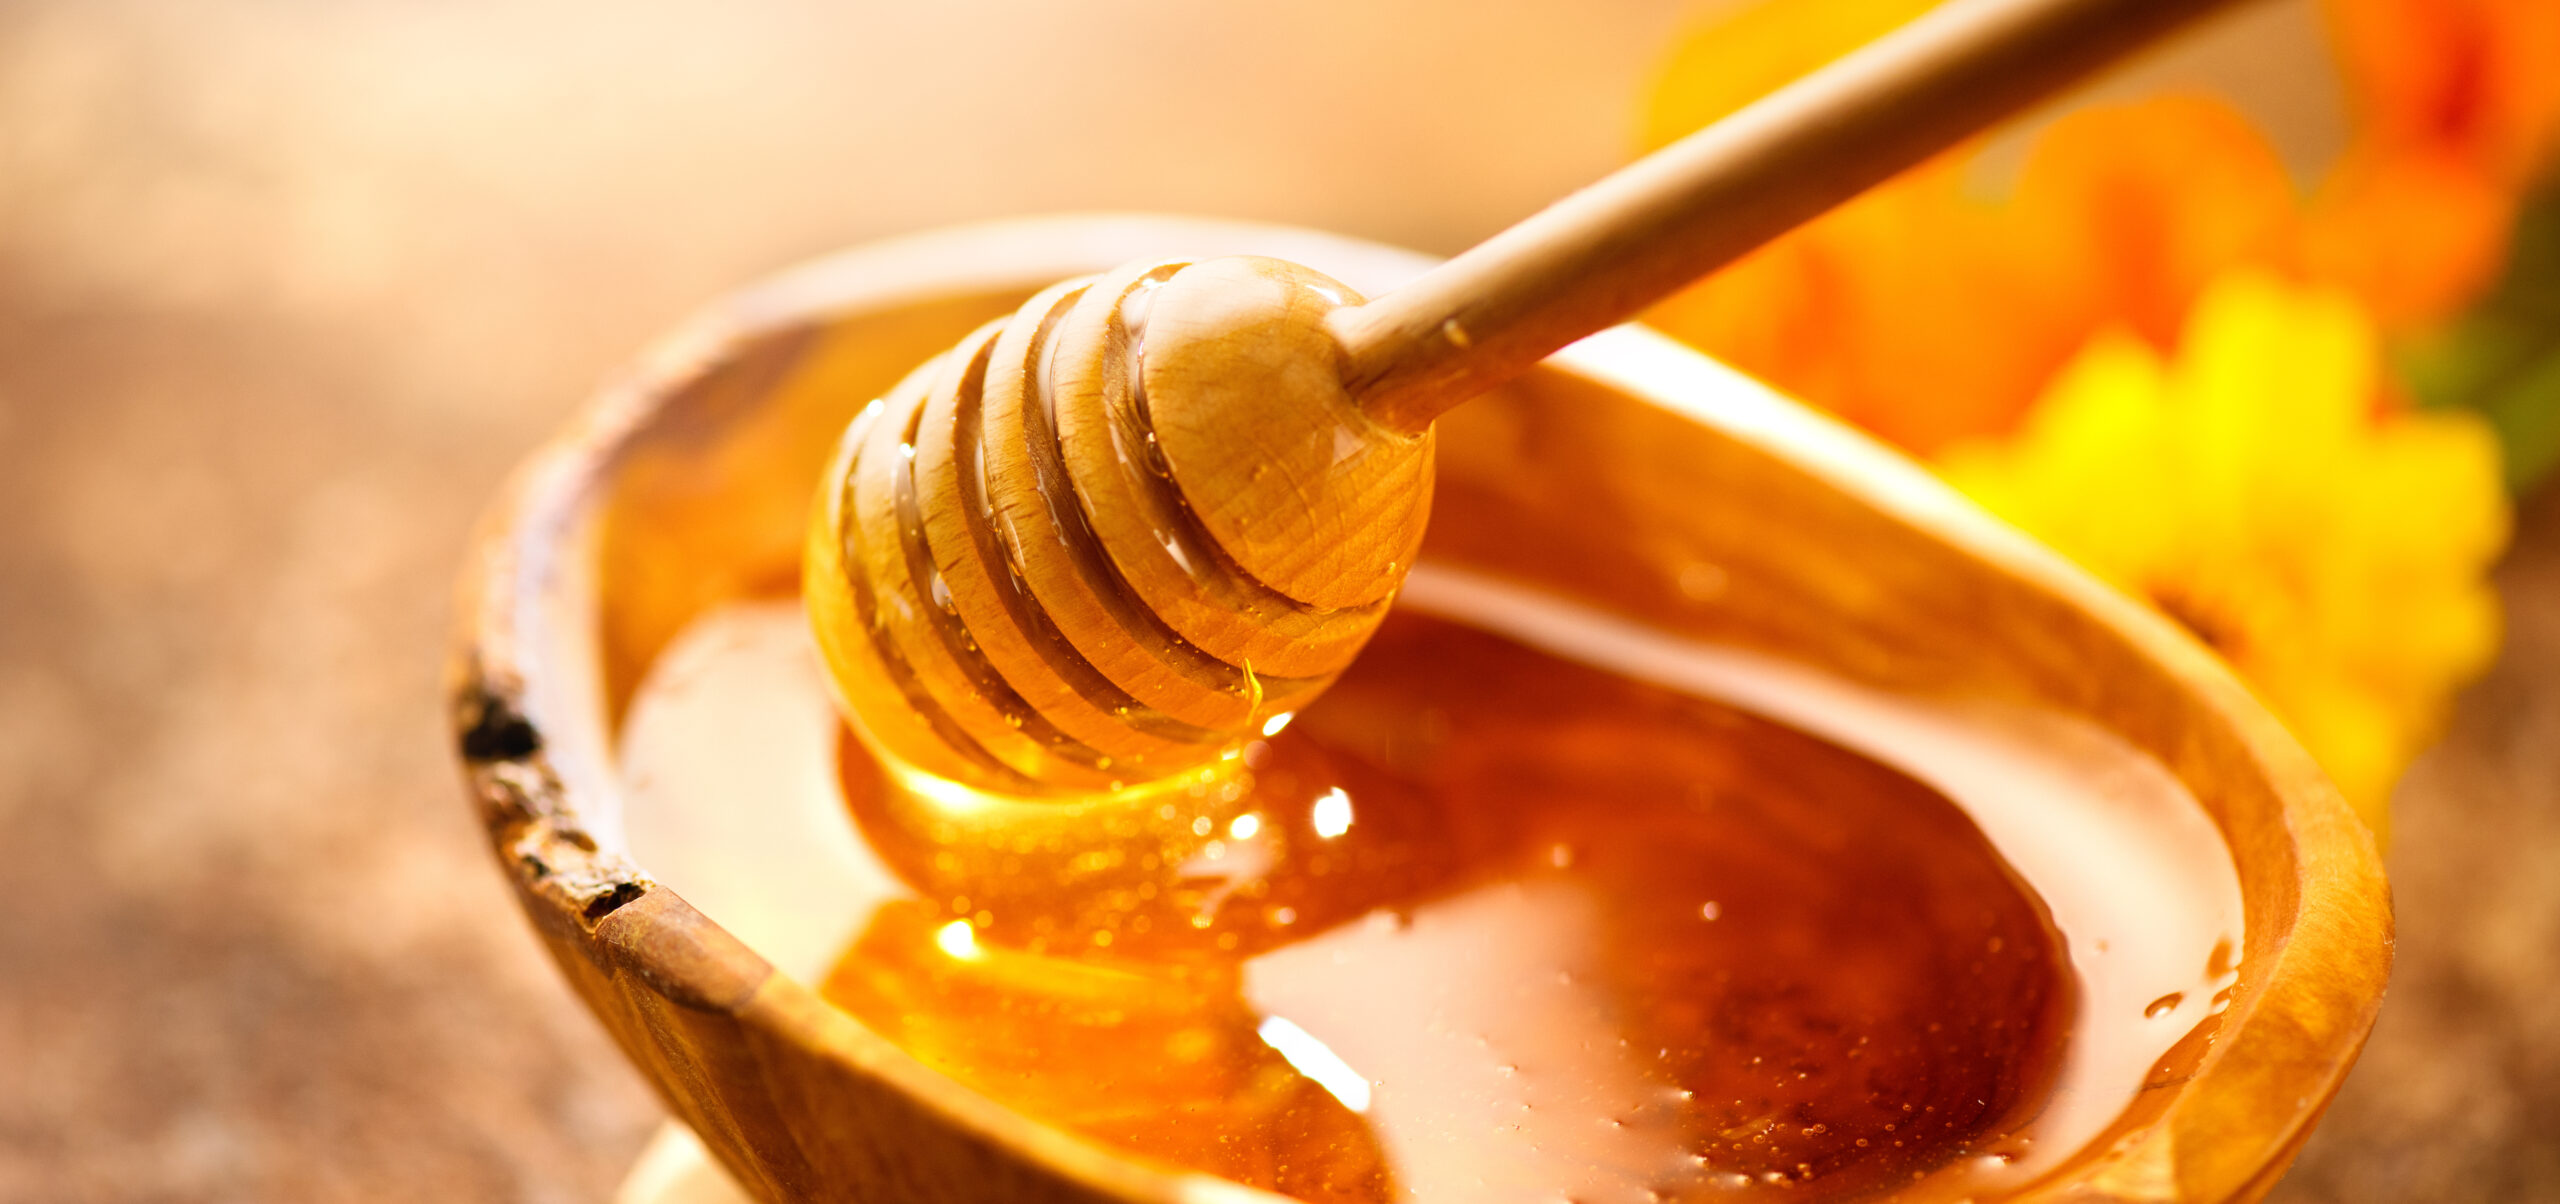 Mangiare miele tutti i giorni. Ecco cosa succede al tuo corpo